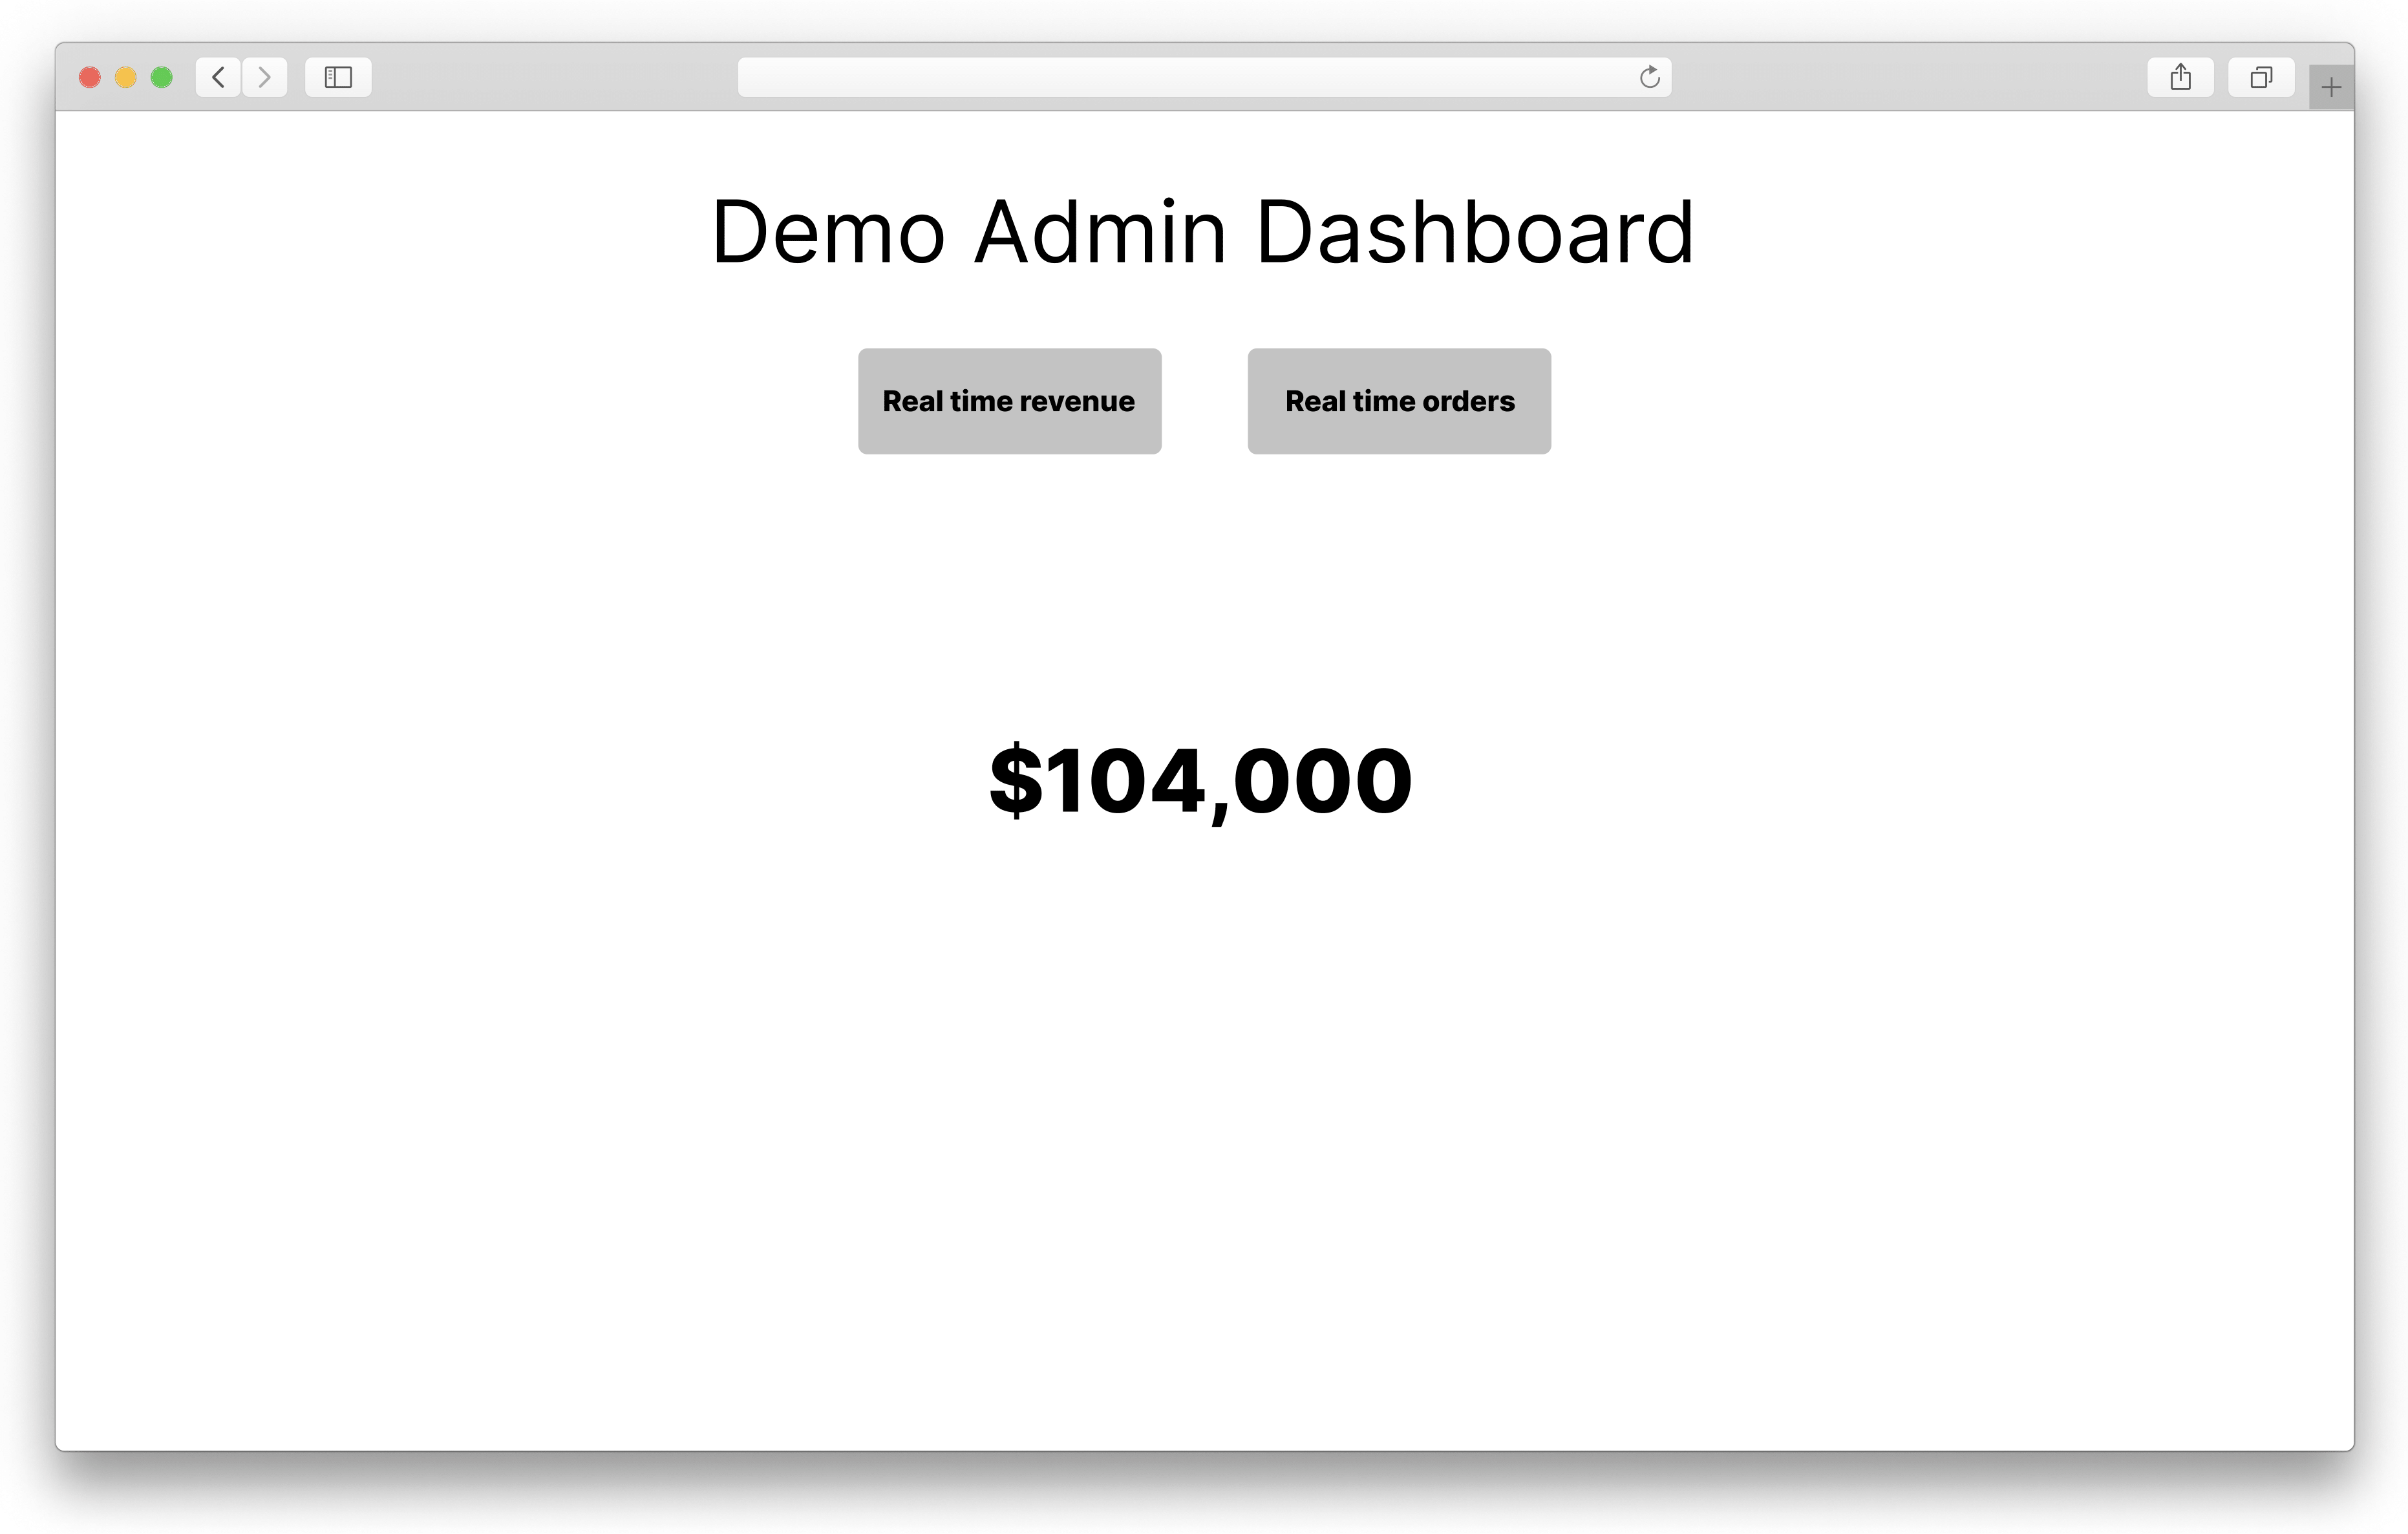 Demo Admin Dashboard Mockup